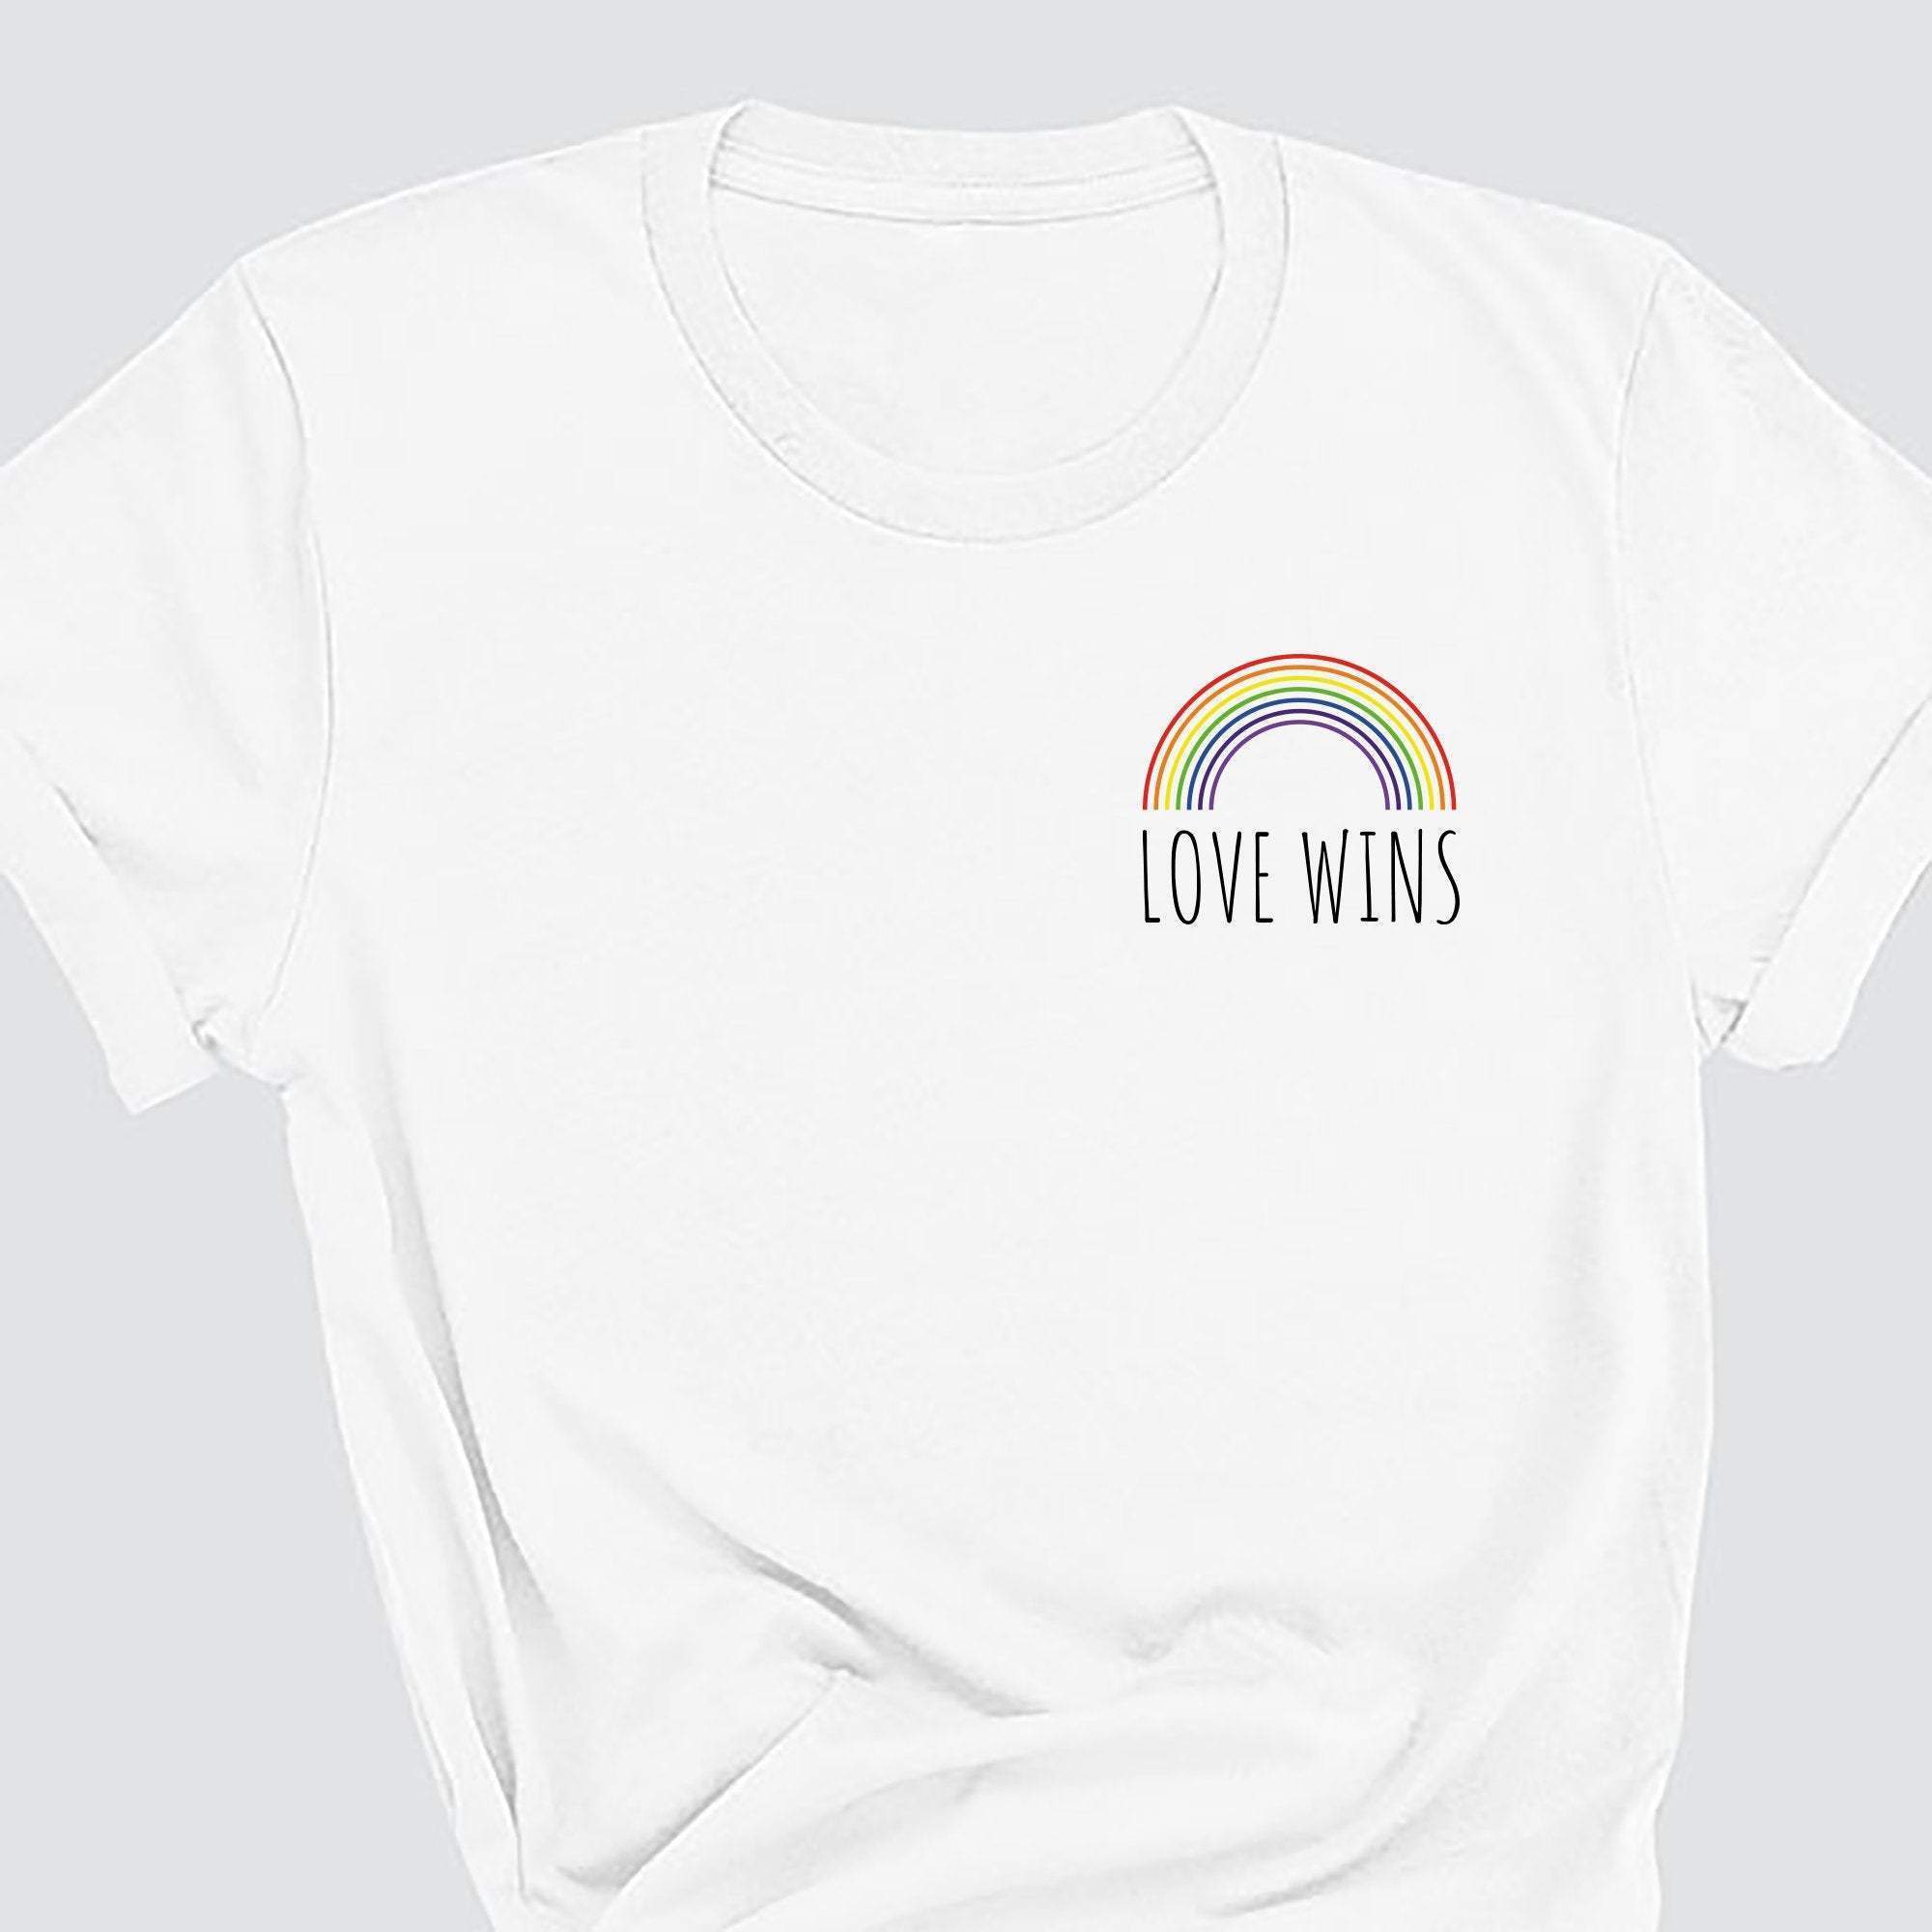 Love Wins T-Shirt, Pride Gift, Lgbt Flag Tshirt